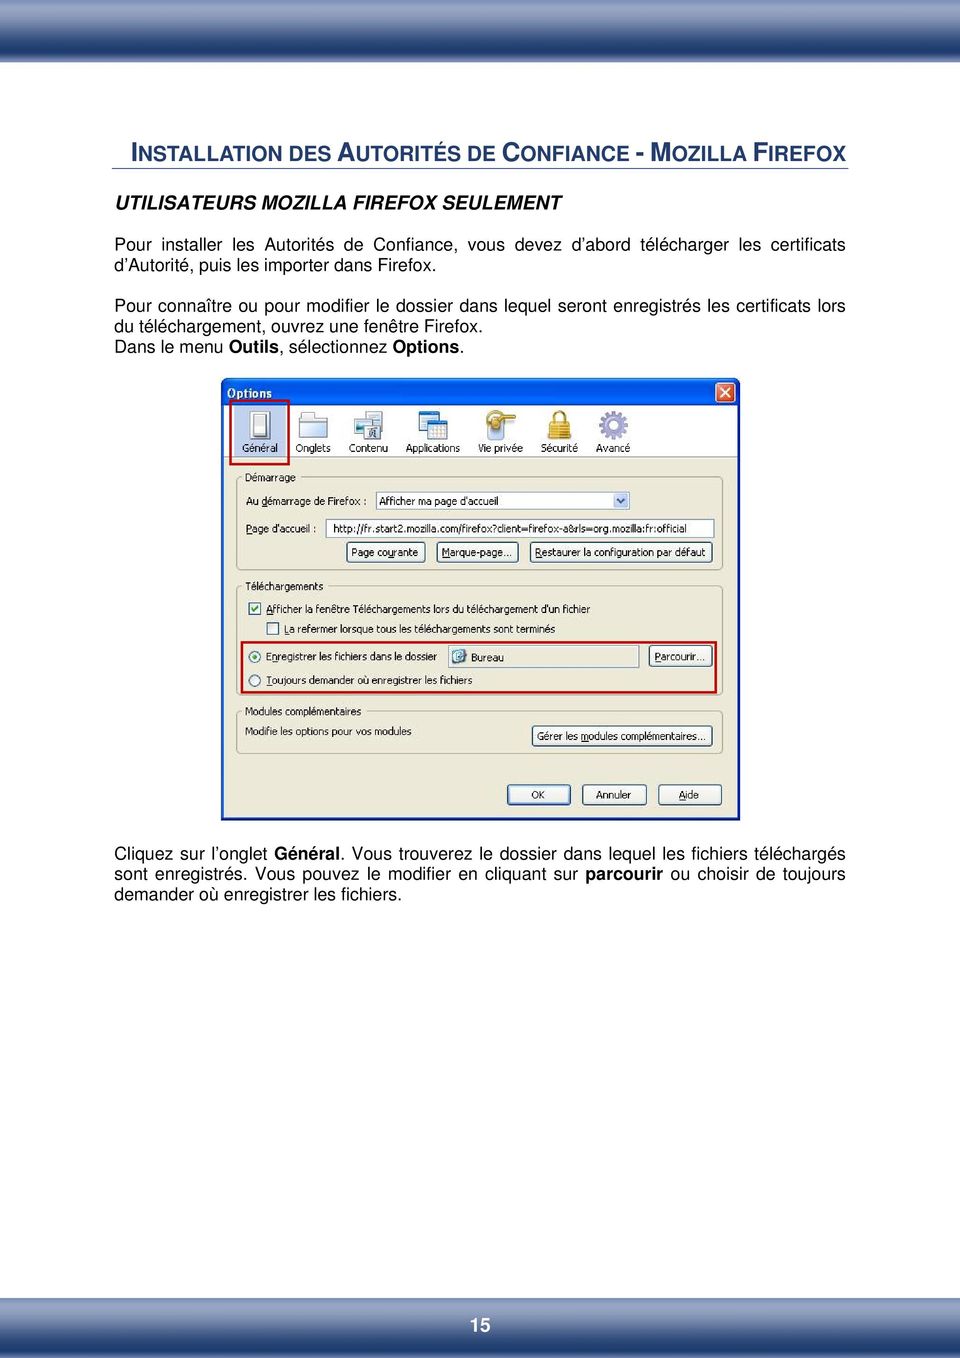 Pour connaître ou pour modifier le dossier dans lequel seront enregistrés les certificats lors du téléchargement, ouvrez une fenêtre Firefox.